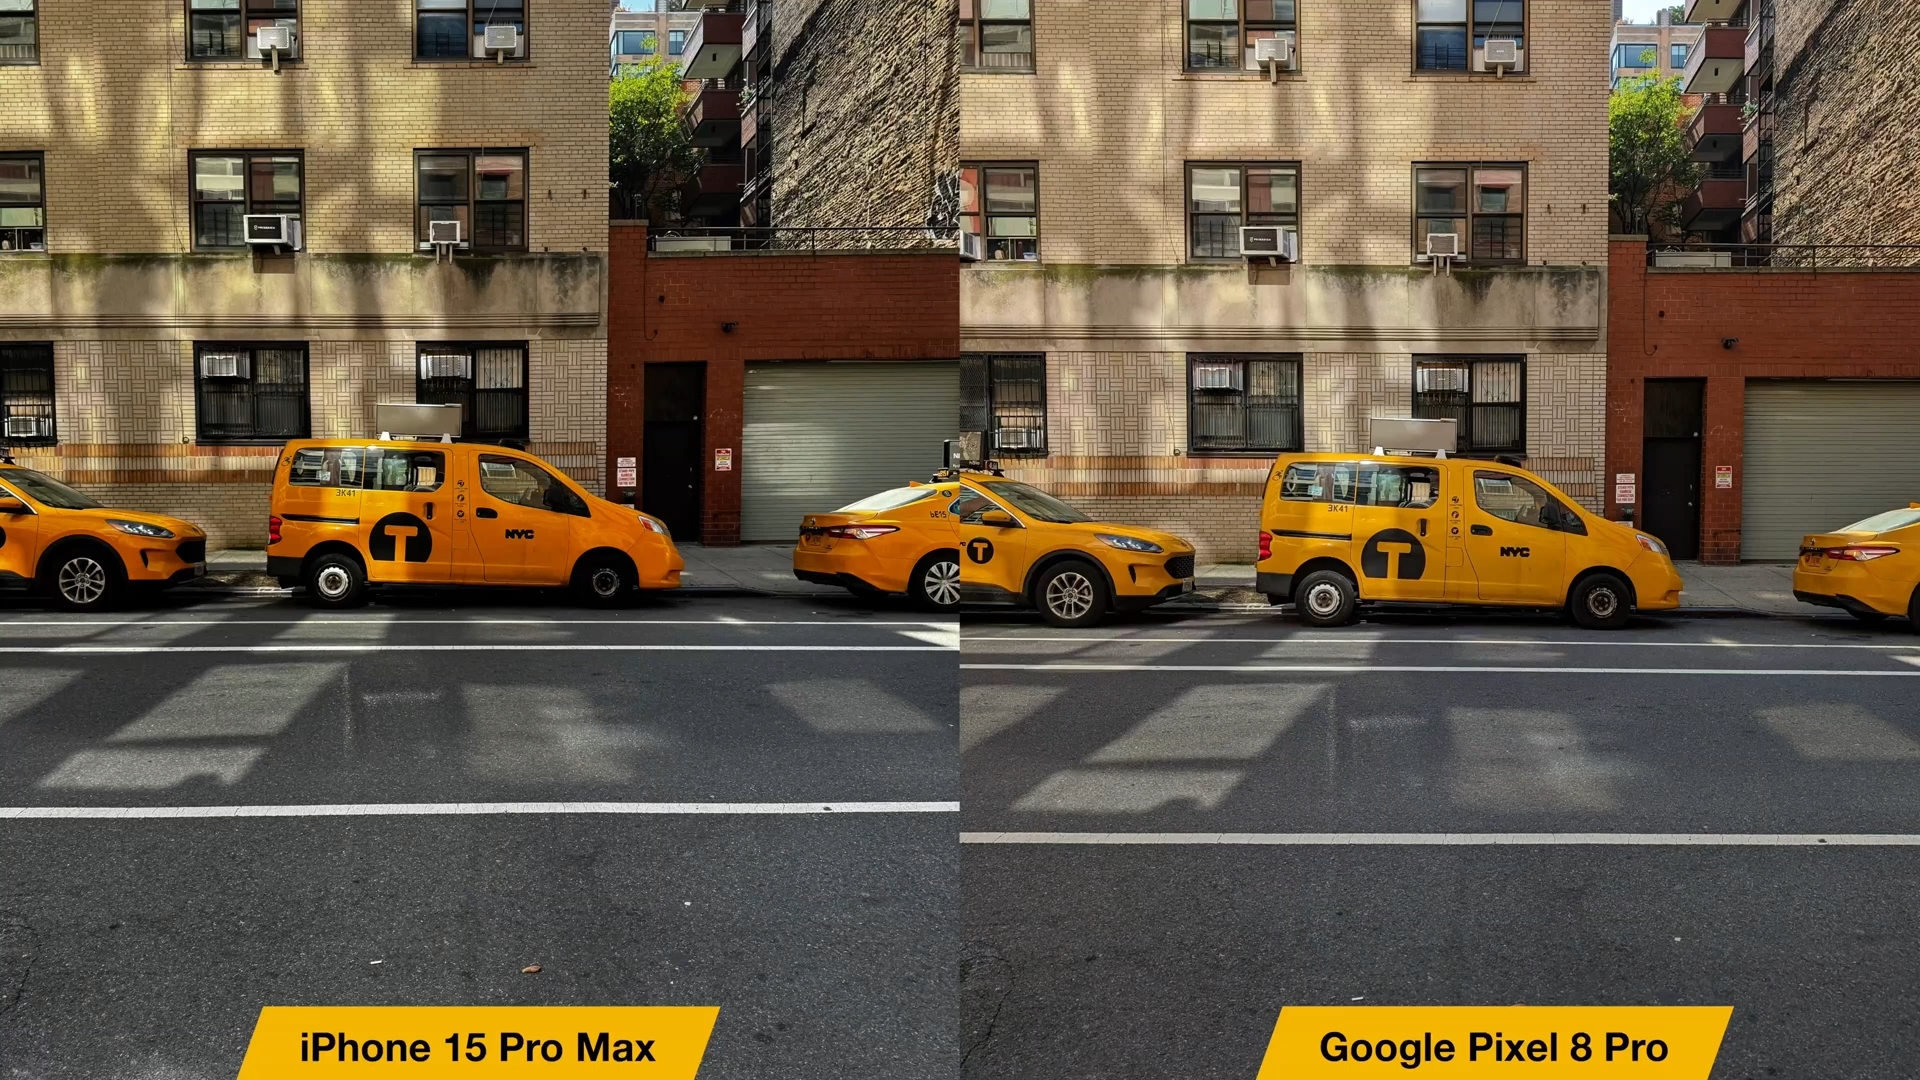 iPhoneIslam.com سے، گوگل پکسل 8 پرو اور آئی فون 15 پرو میکس کے درمیان موازنہ